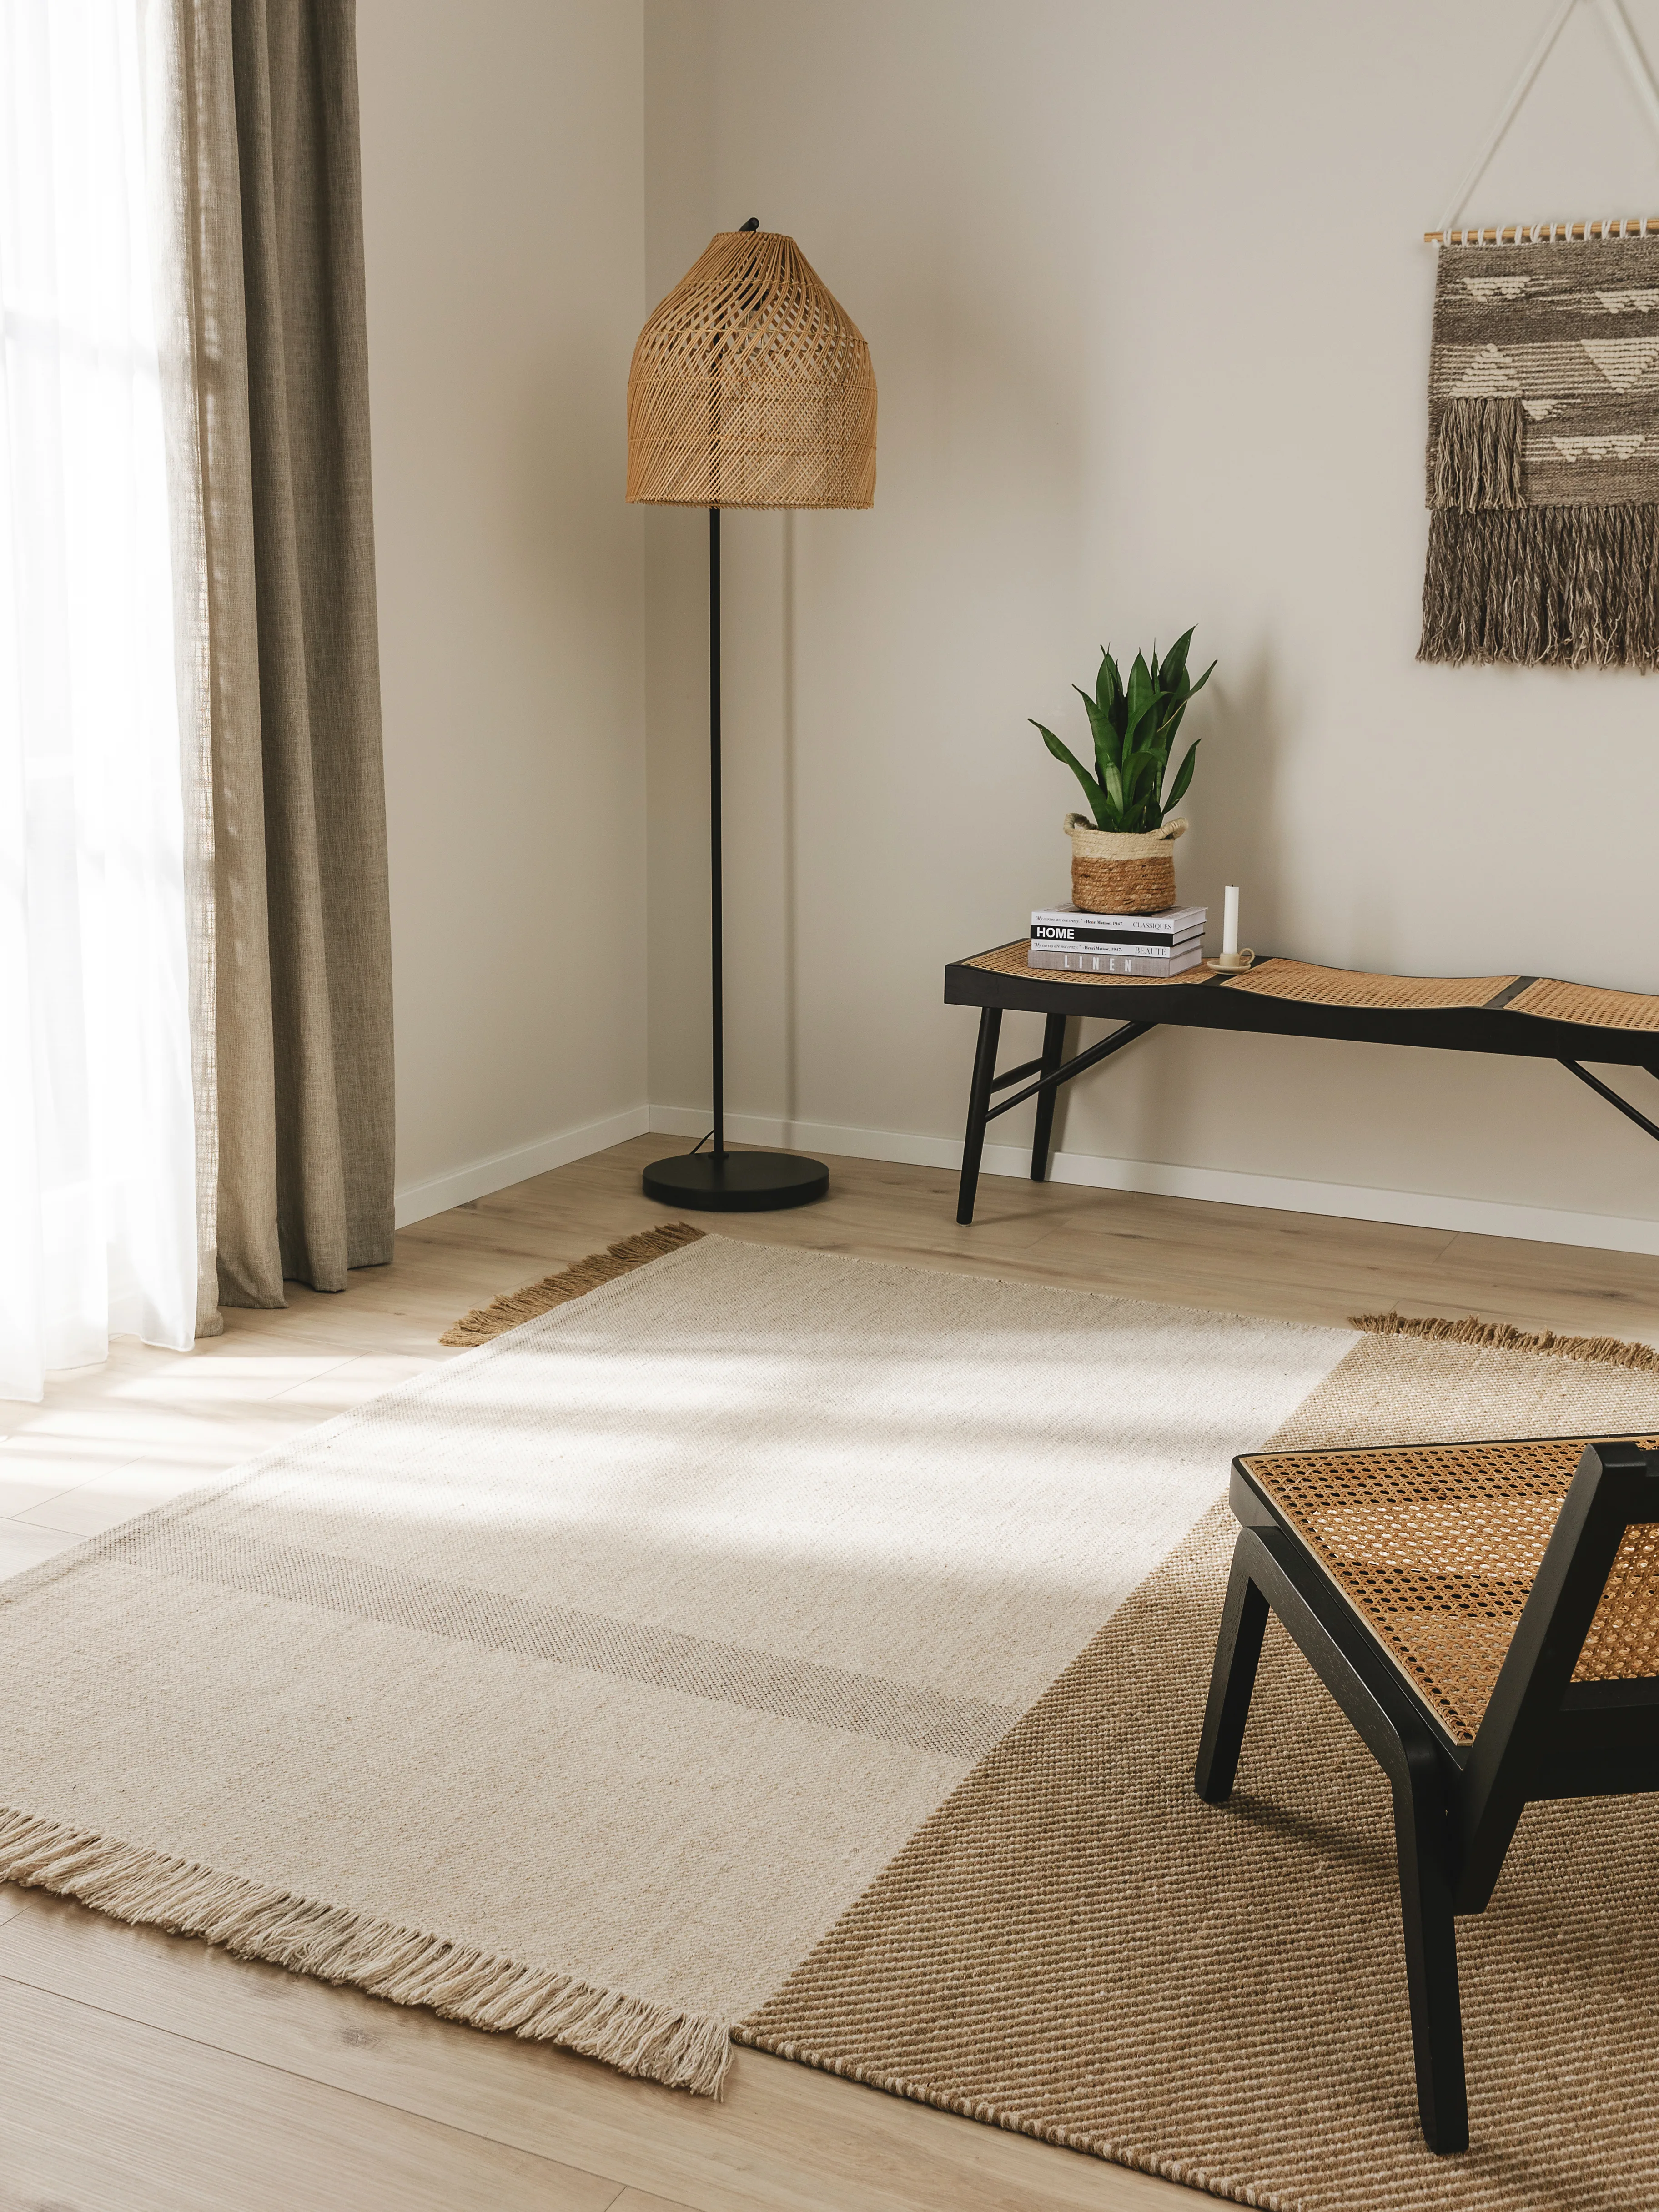 Skandinavische Einrichtung im Wohnzimmer mit vielen Naturtönen und natürlichen Materialien wie Lampe mit Rattanschirm und Rattansessel